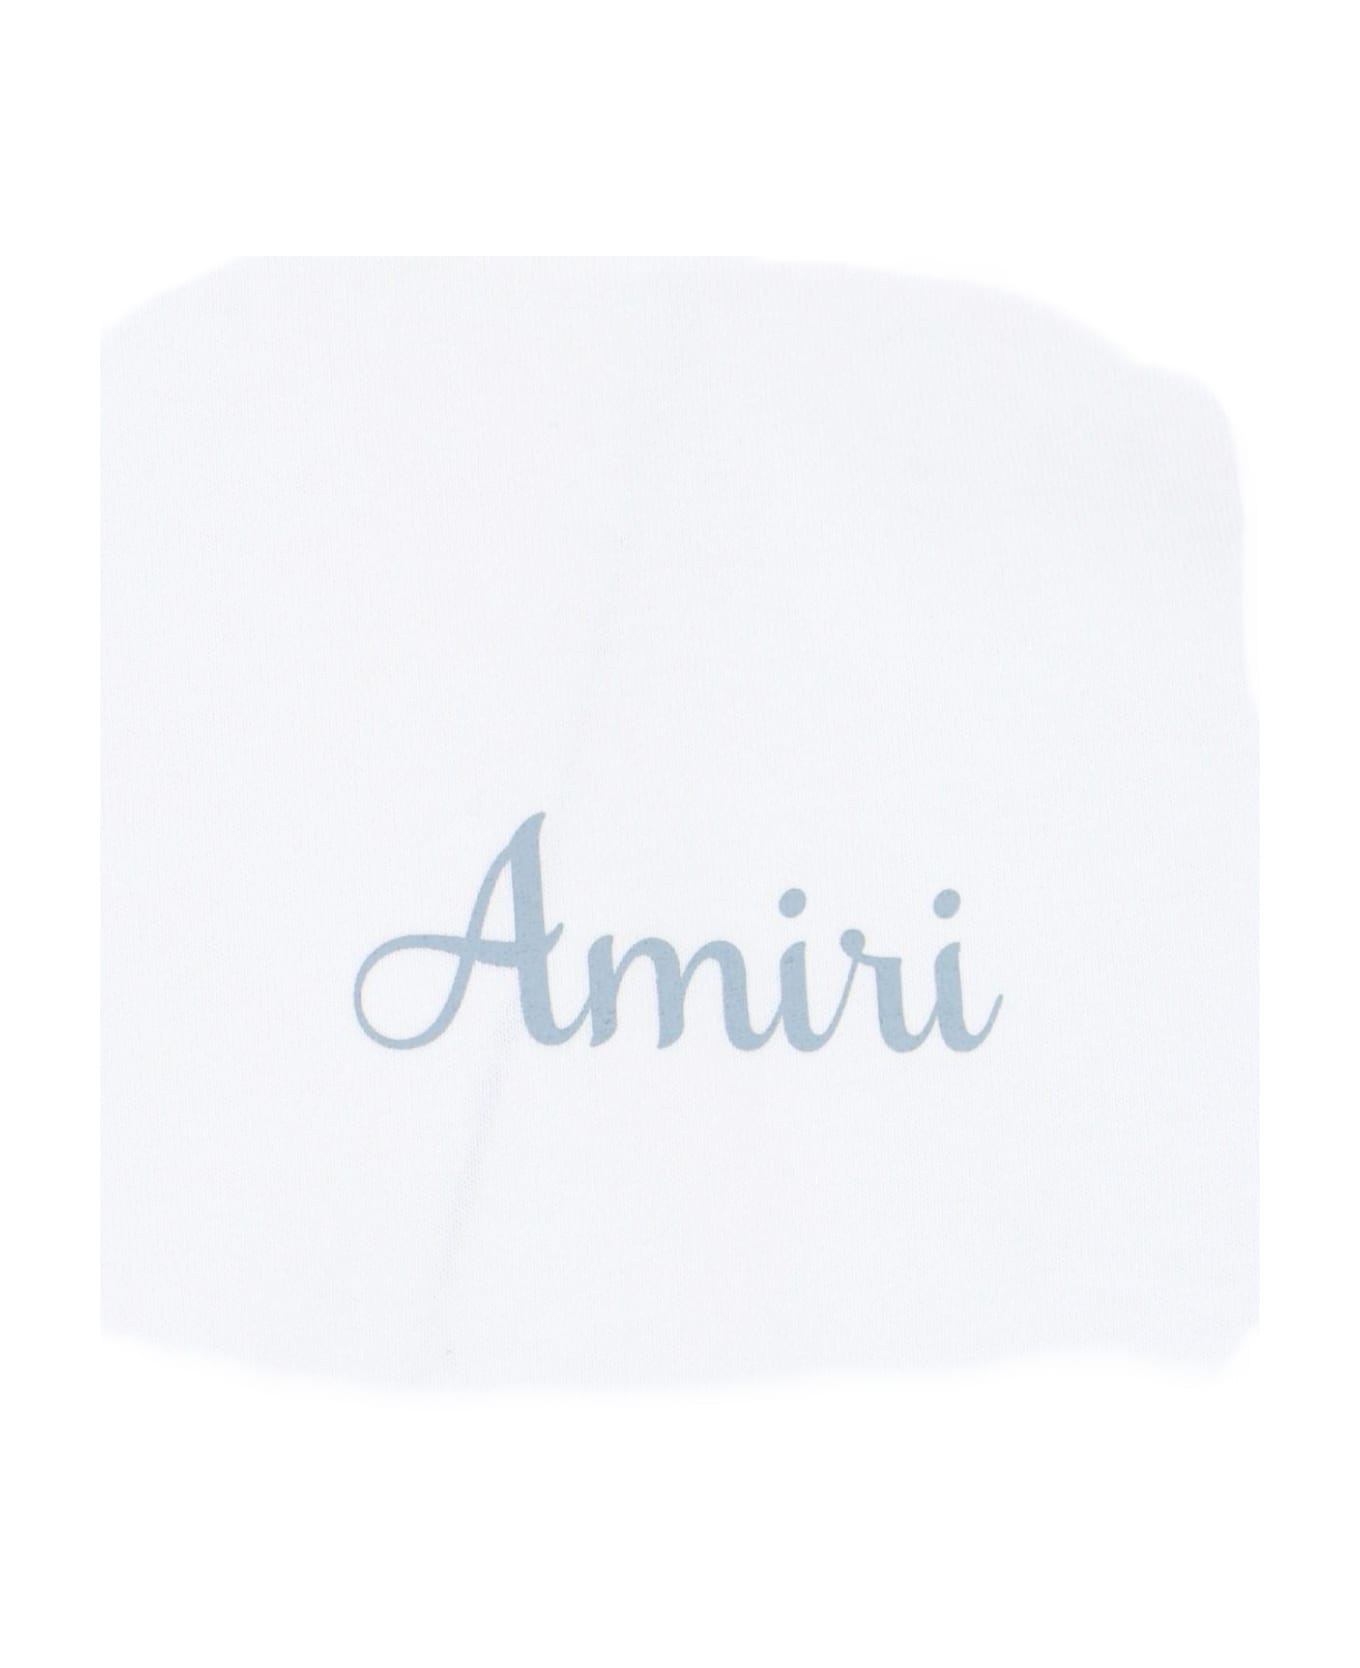 AMIRI Back Print T-shirt - WHITE